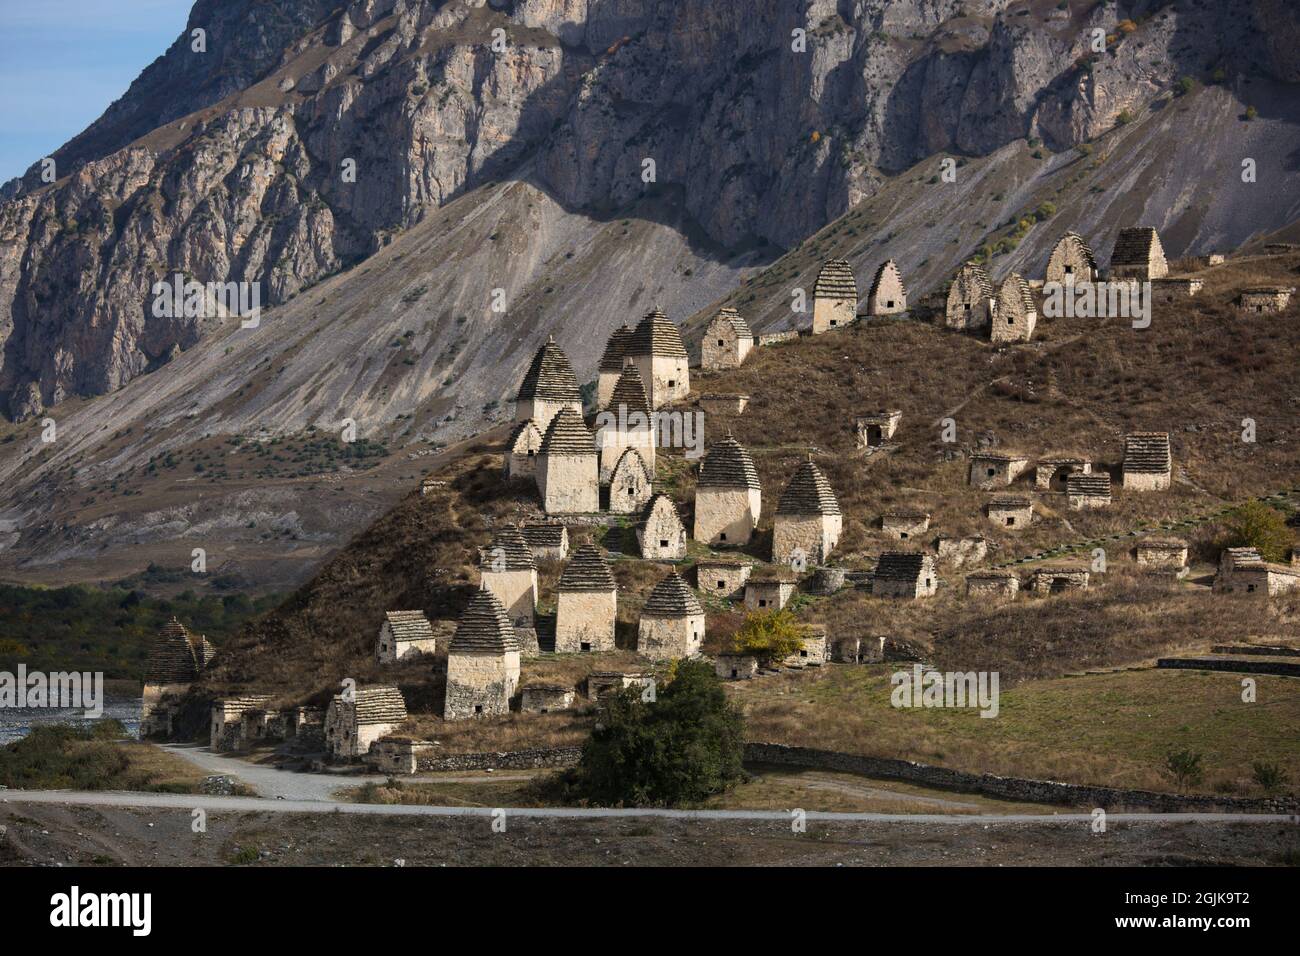 Necropoli medievale città dei morti nelle montagne del Caucaso. Ossezia settentrionale. Foto Stock